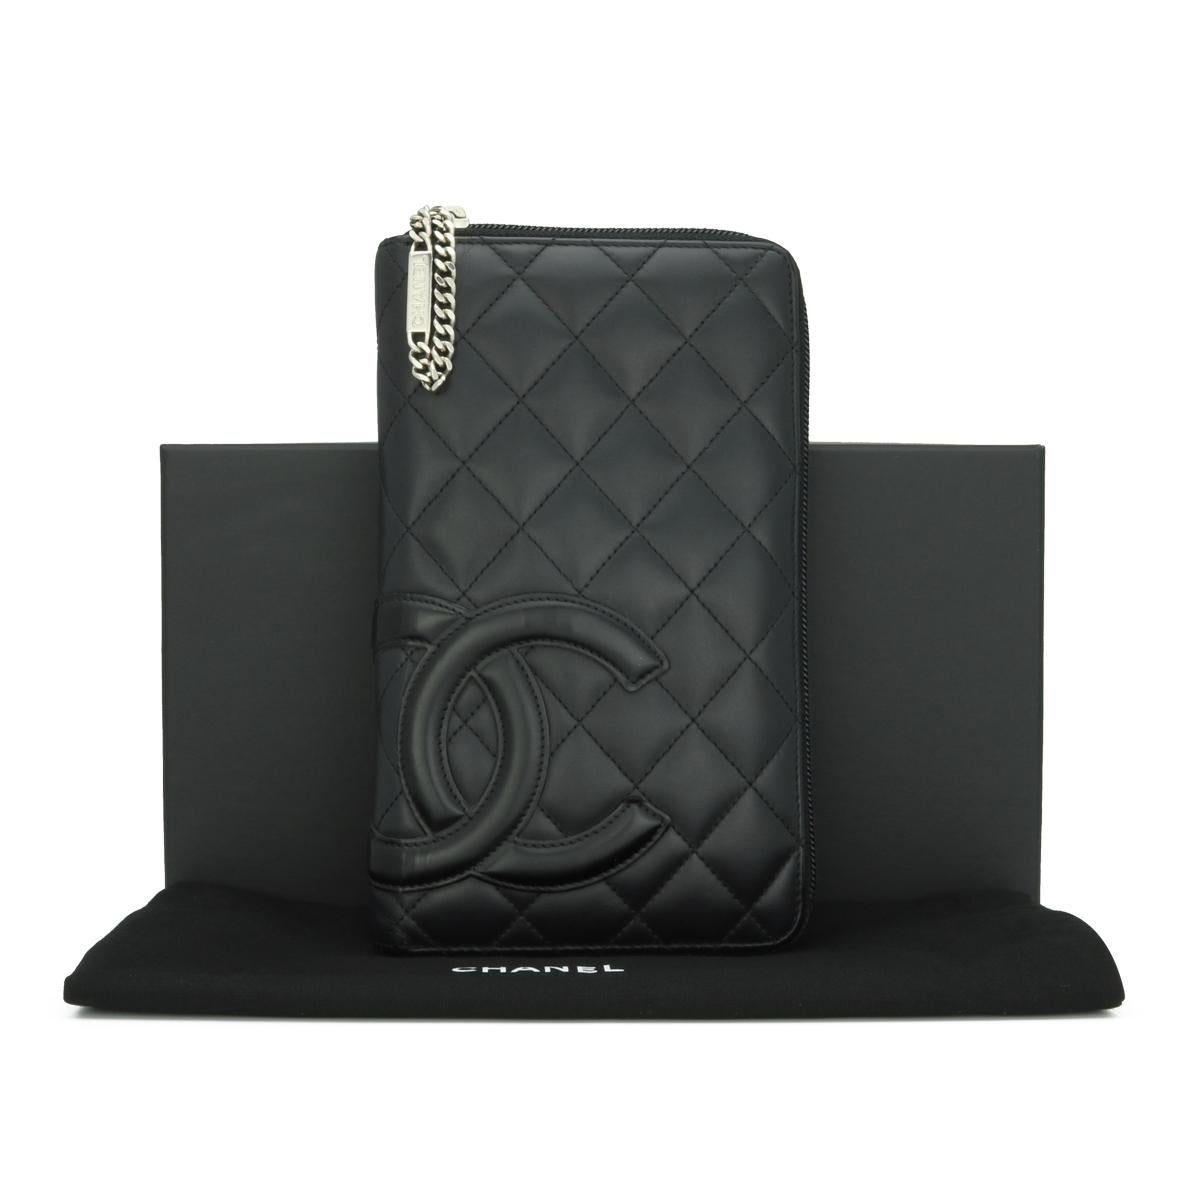 CHANEL Gestepptes Cambon Portemonnaie mit Reißverschluss in schwarzem Kalbsleder mit silberfarbener Hardware 2011.

Diese atemberaubende große Brieftasche mit Reißverschluss ist in gutem Zustand. Es hat immer noch seine ursprüngliche Form, und die